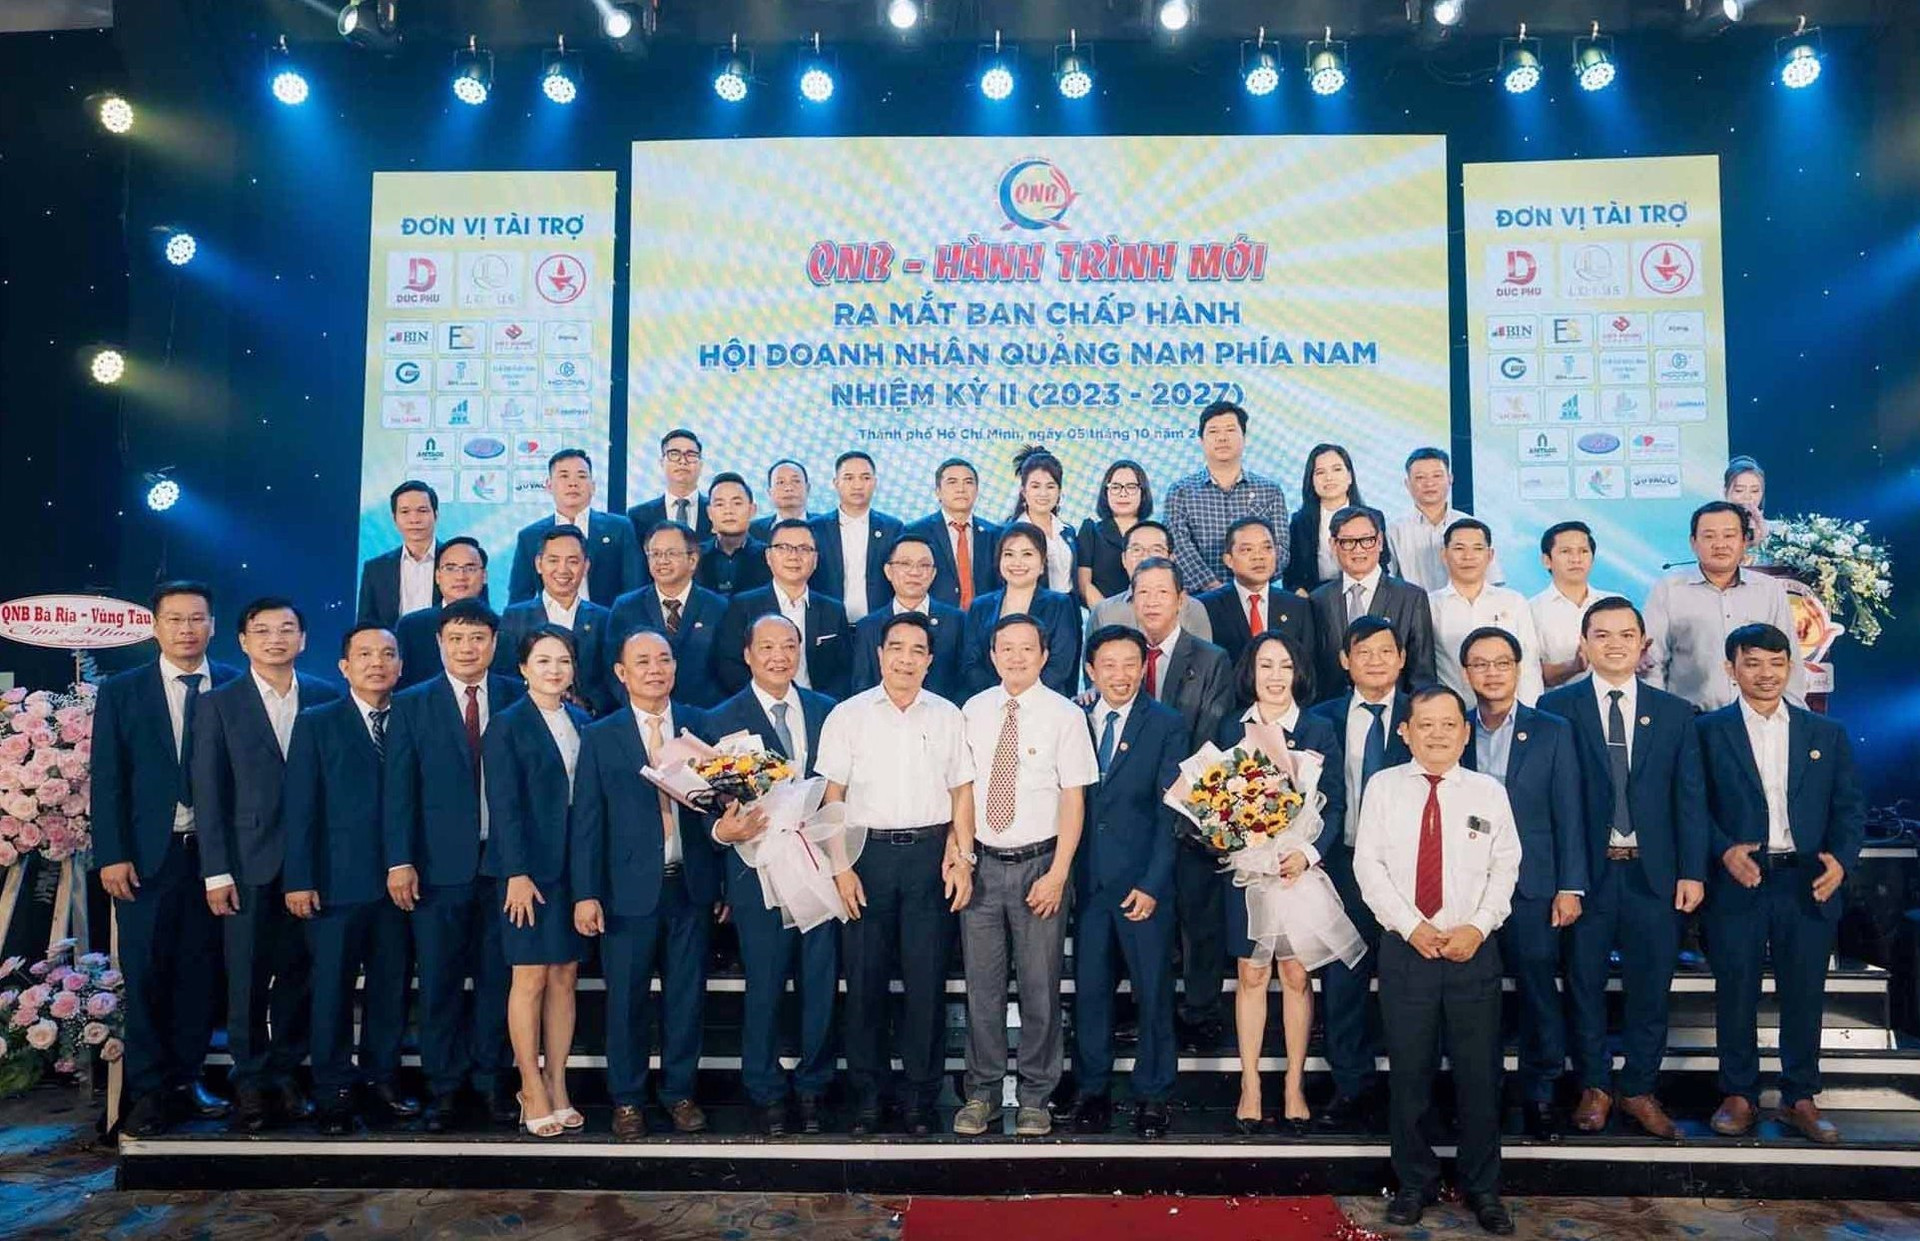 Ban chấp hành Hội doanh nhân Quảng Nam phía Nam (QNB) nhiệm kỳ 2023 - 2027. Ảnh: PHAN VINH